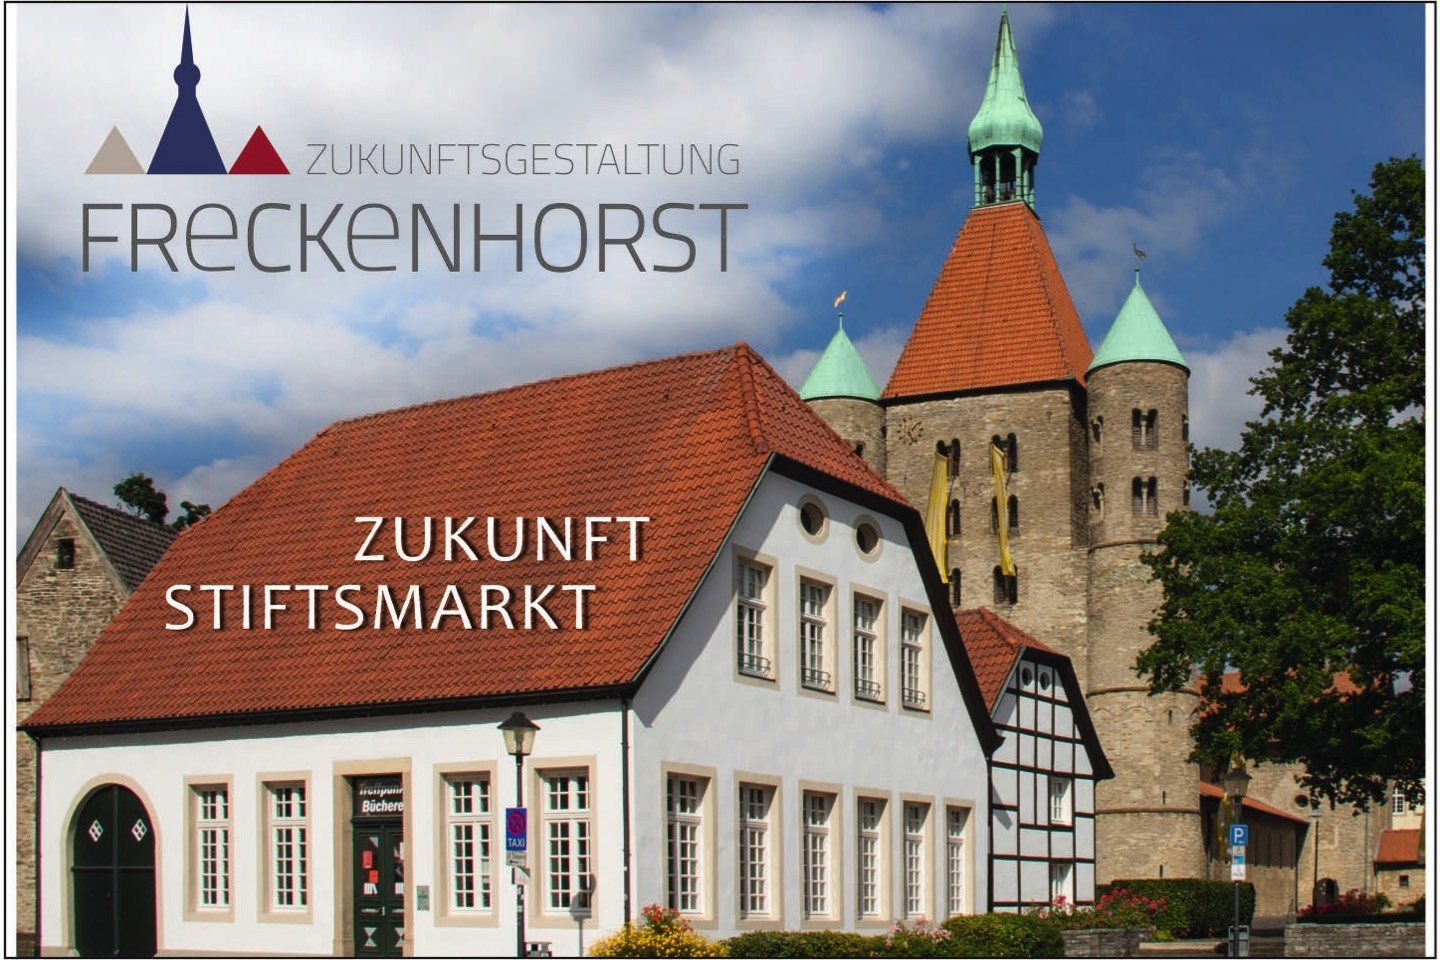 Freckenhorst gestalten,Stadt Warendorf,Stiftsmarkt,Warendorf,Bürgerbeteiligung,